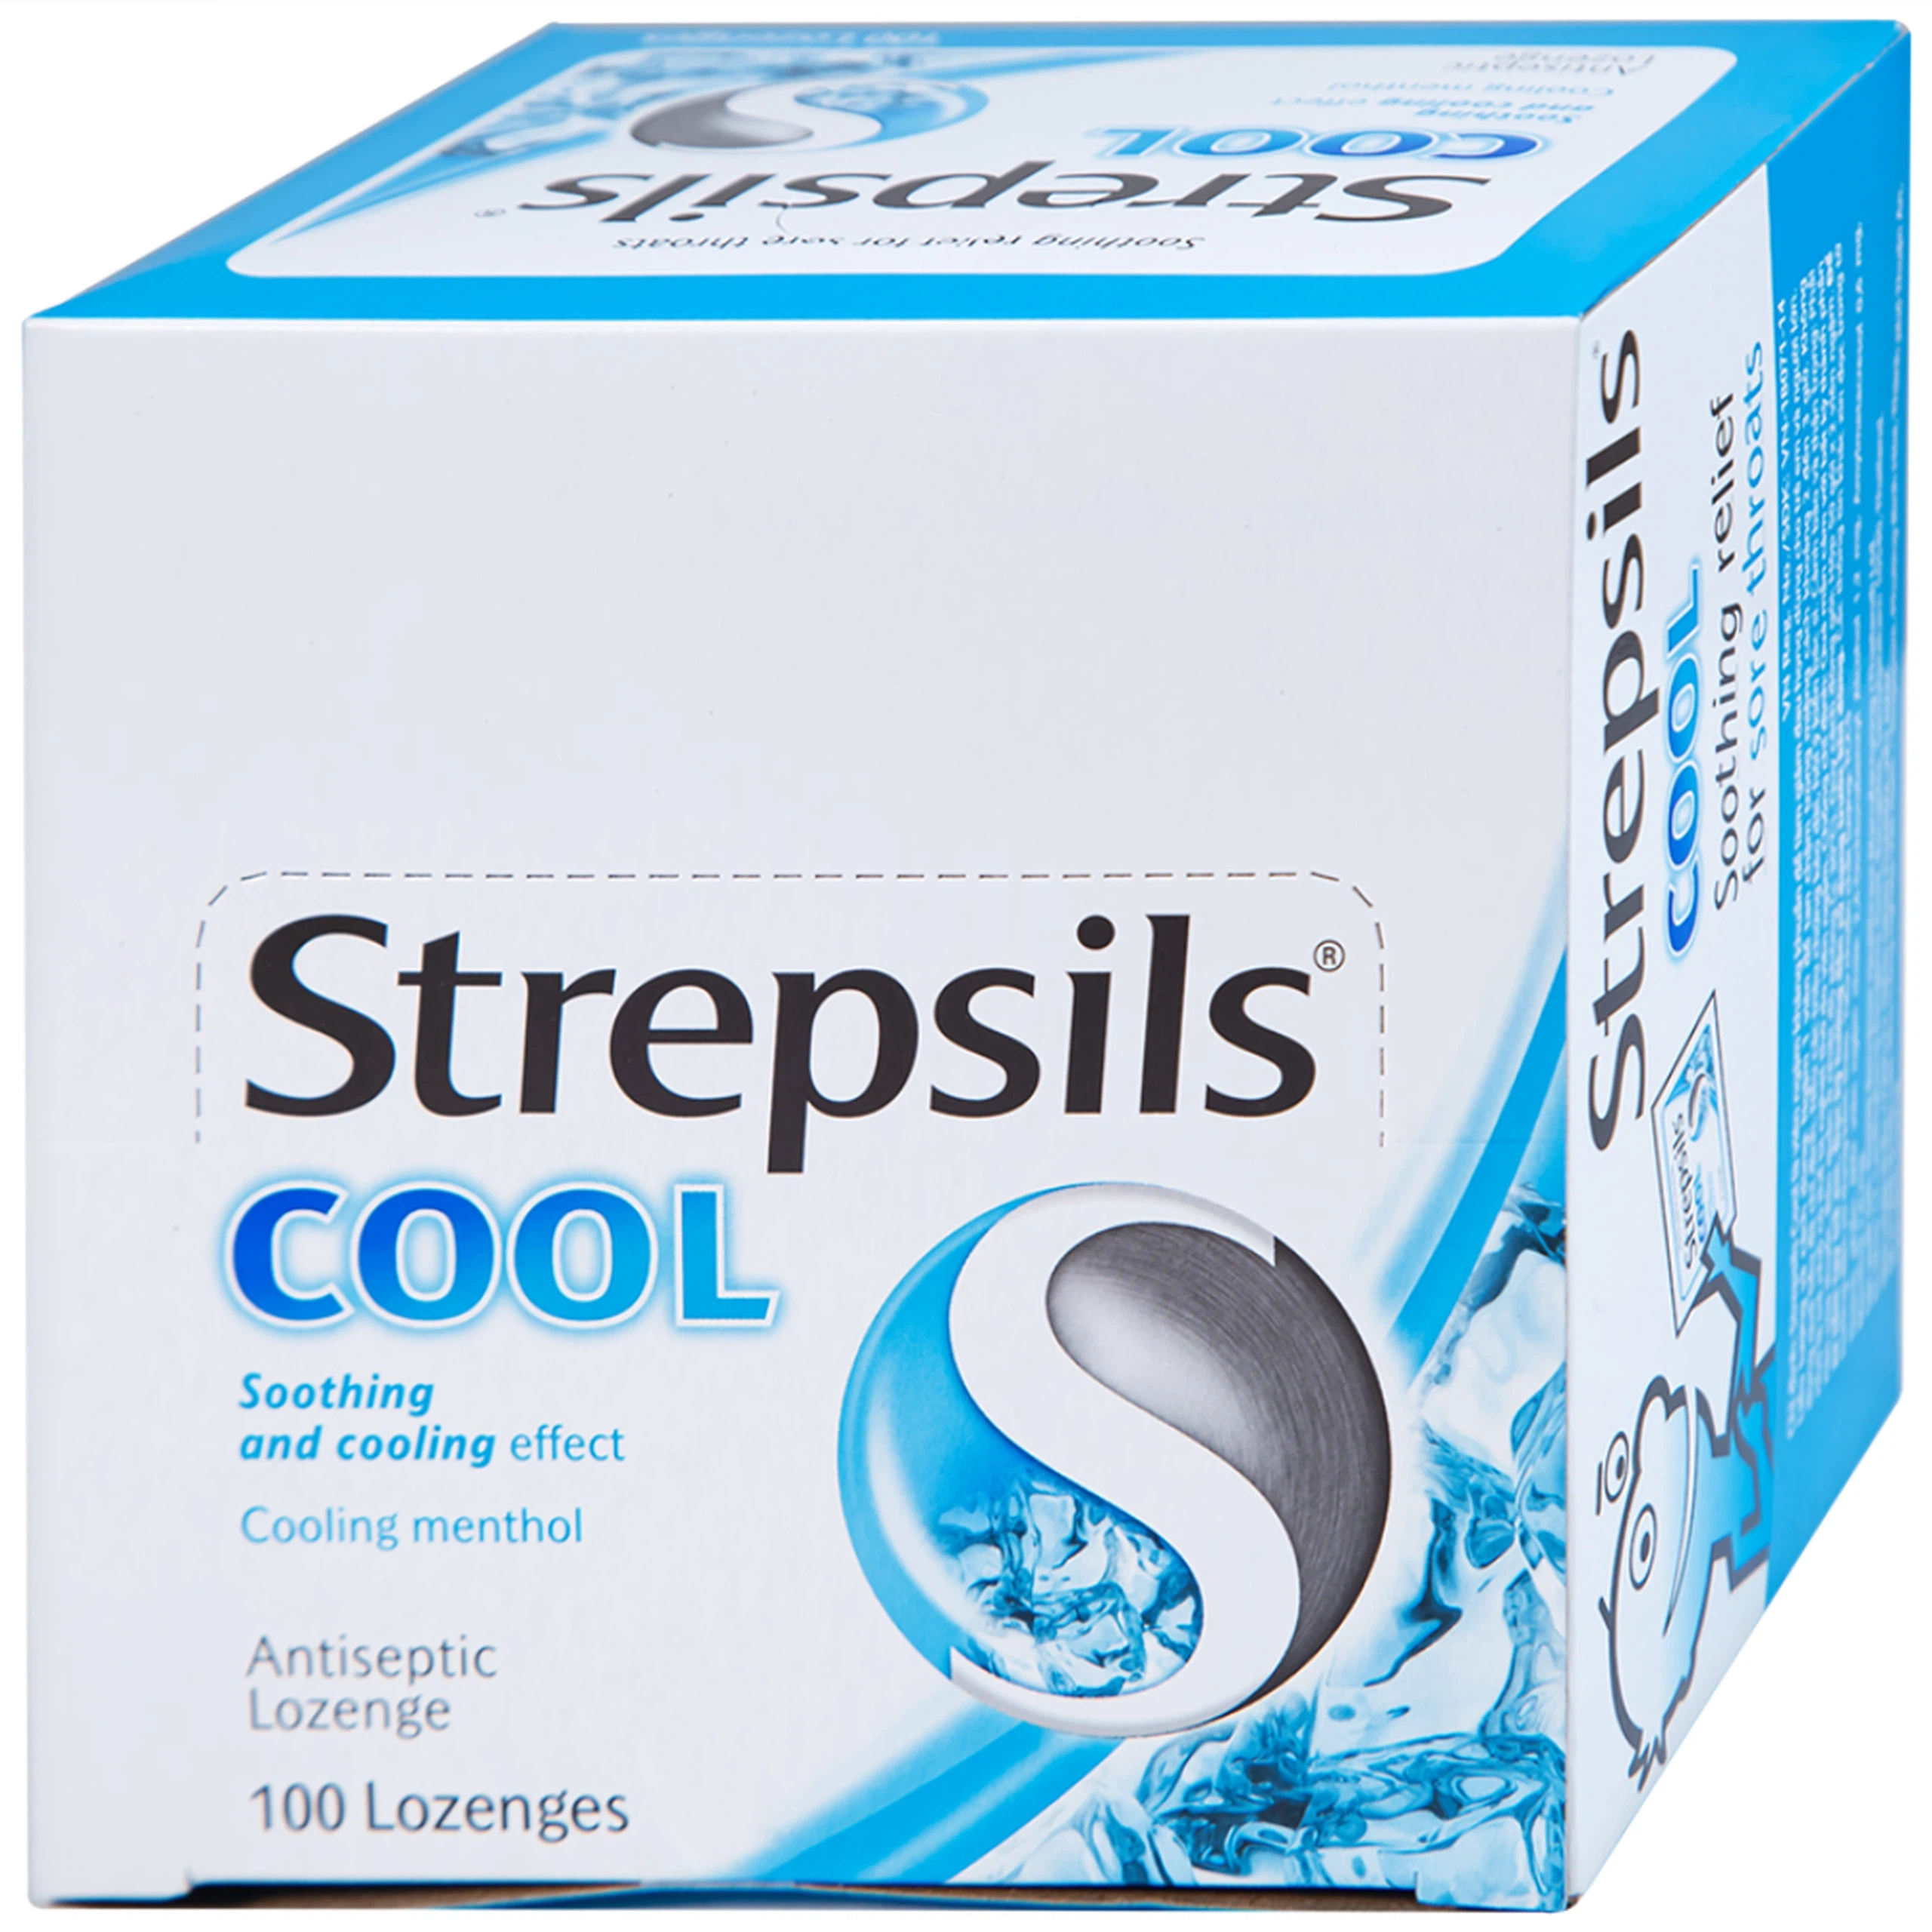 Viên ngậm Strepsils Cool Reckitt Benckiser giảm đau họng (50 gói x 2 viên)